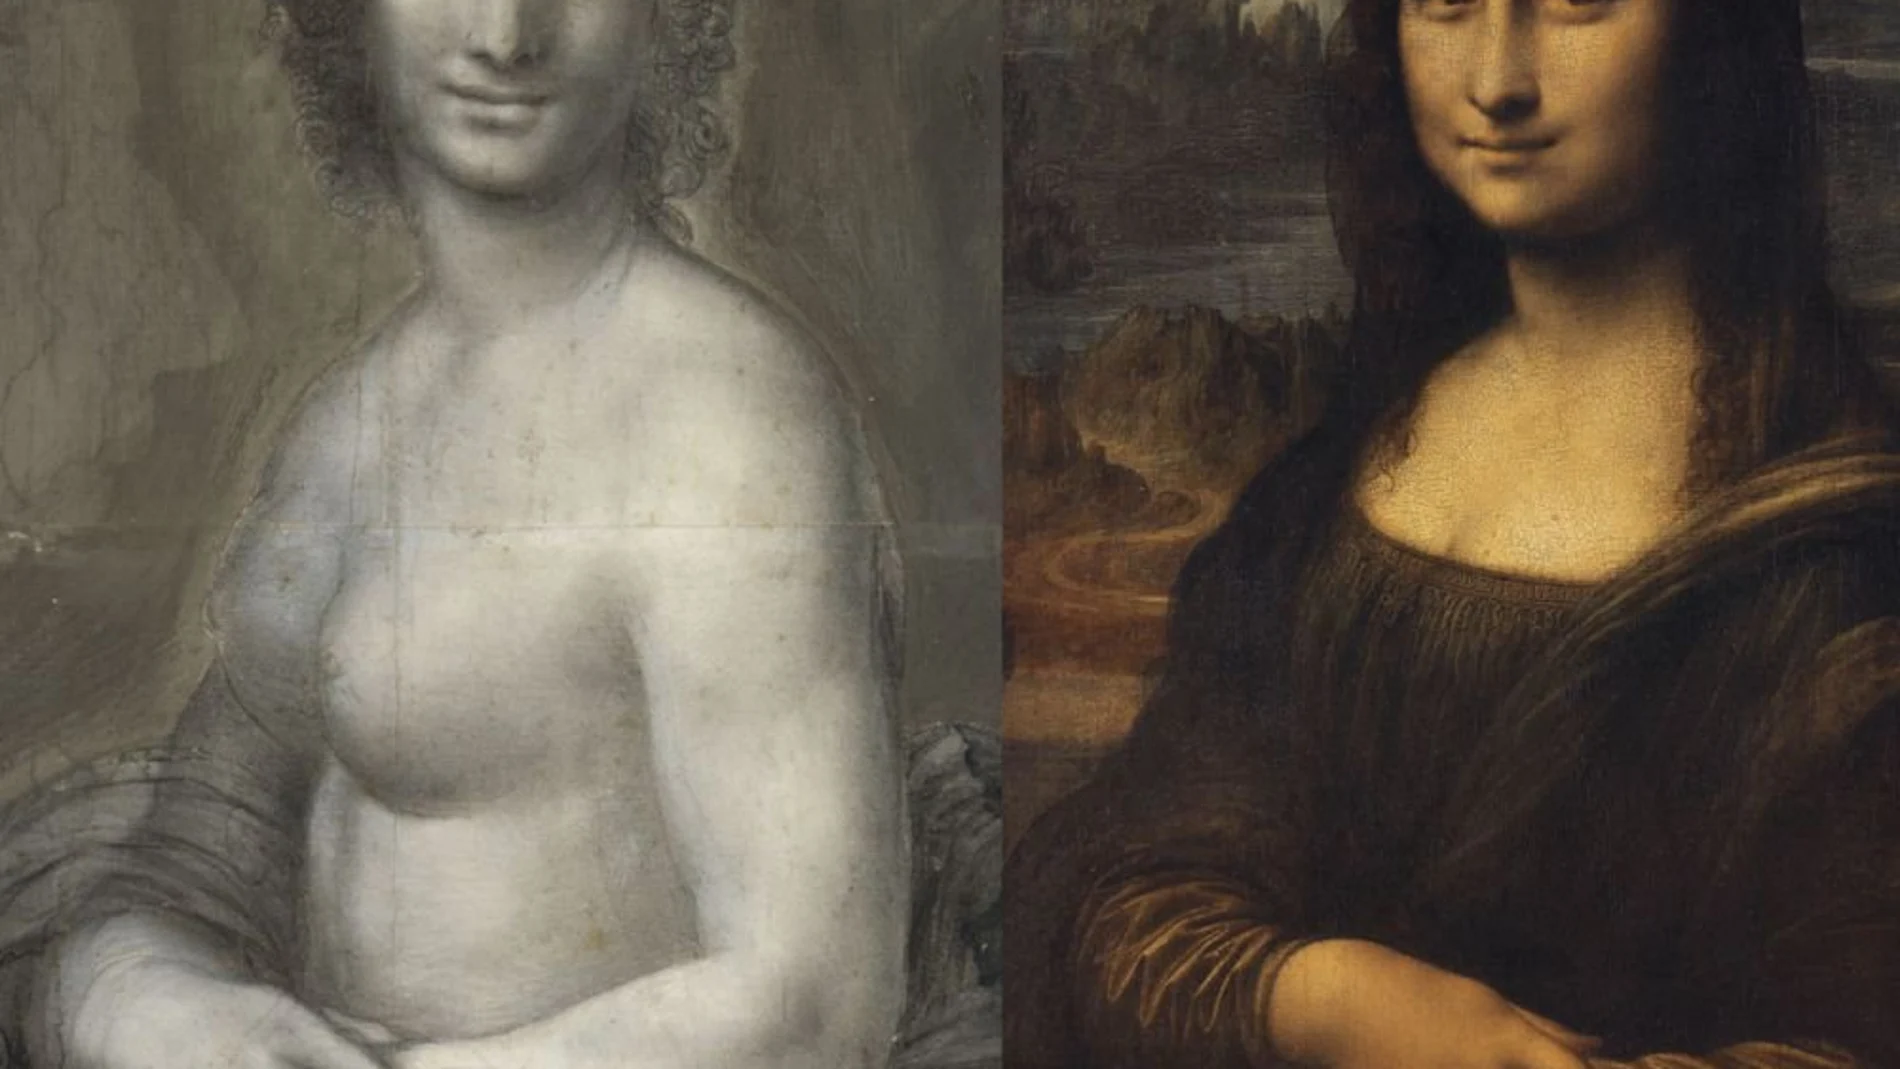 A la izda., La "Monna Vanna"; a la dcha., "La Gioconda", obra de Da Vinci con la que guarda apreciables similitudes en su composición